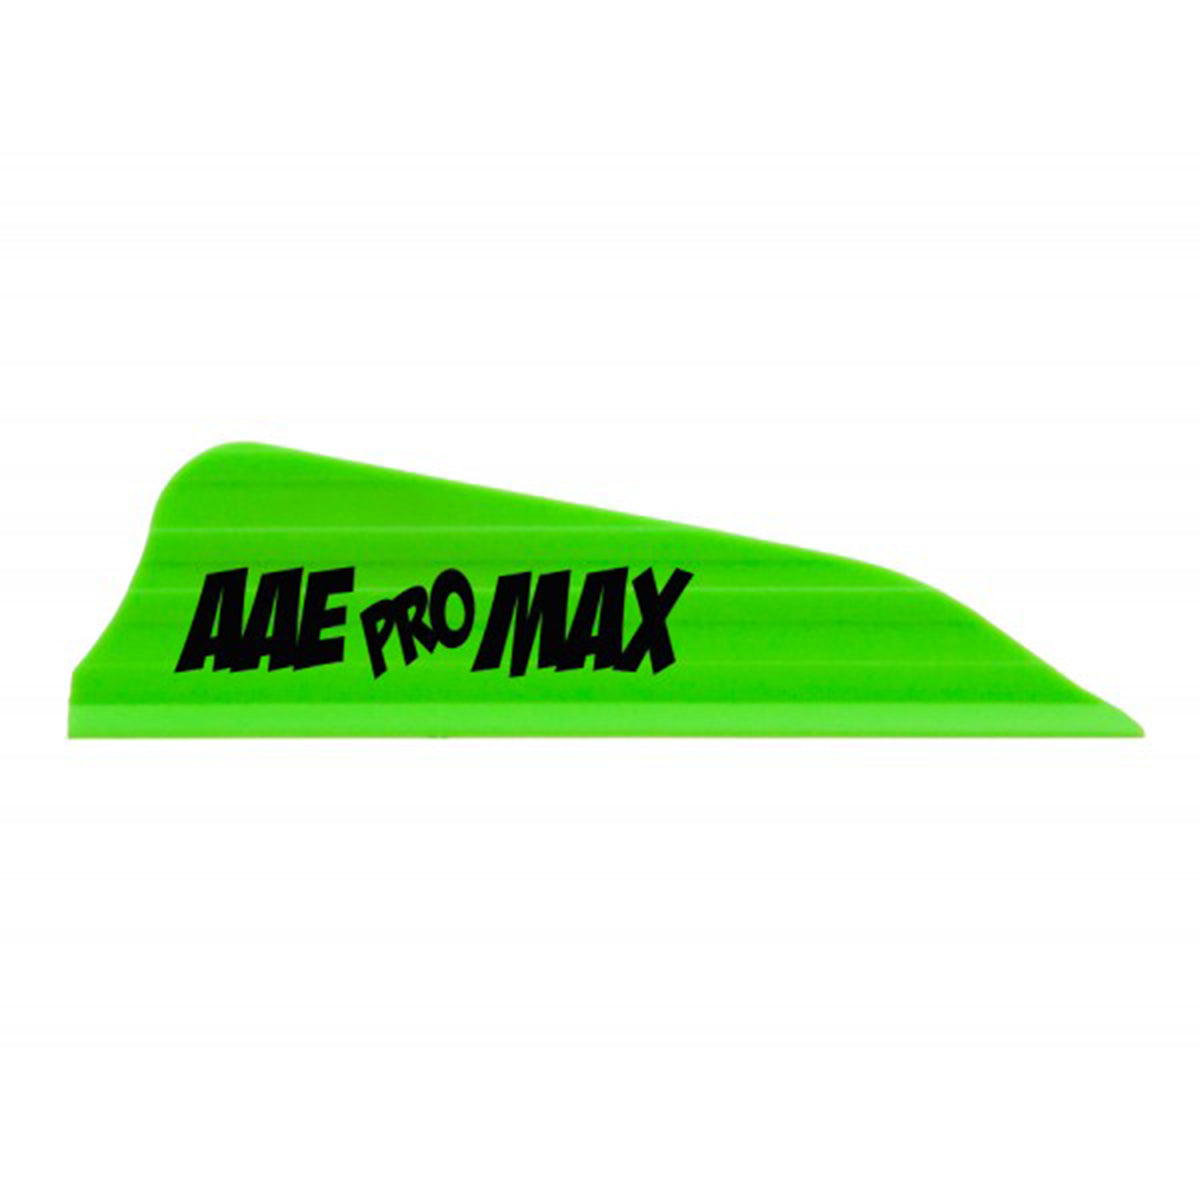 AAE Pro Max Arrow Vanes - 40 pack in Green by GOHUNT | AAE - GOHUNT Shop